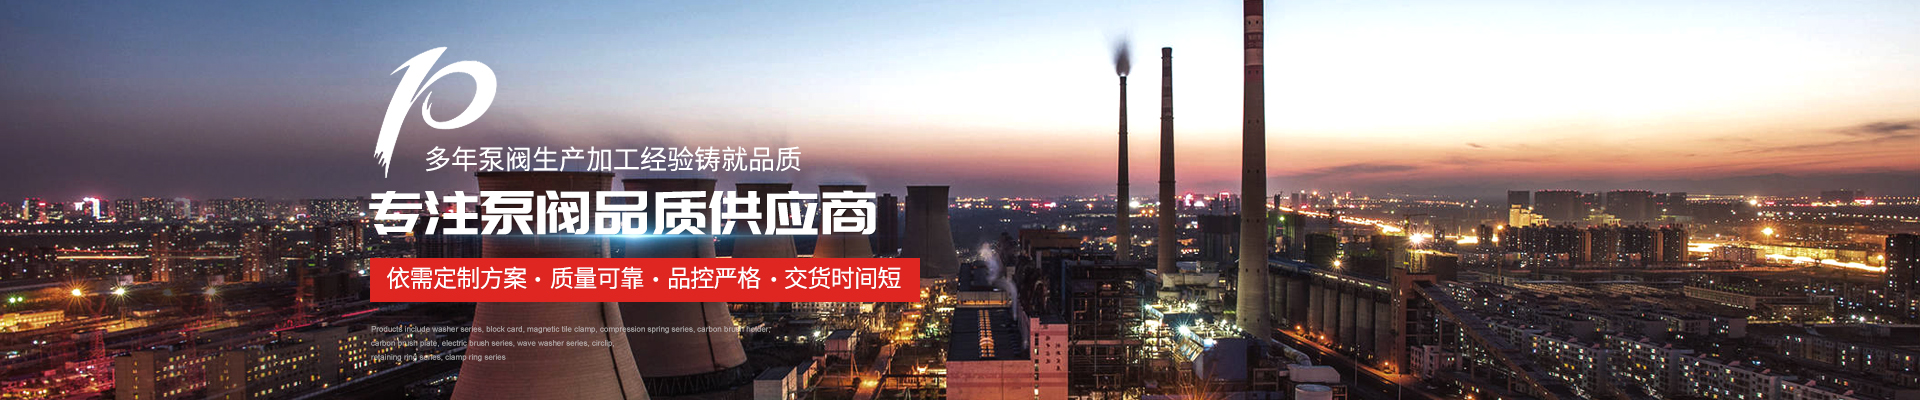 無負壓供水設備廠家 - 上海高適泵閥有限公司